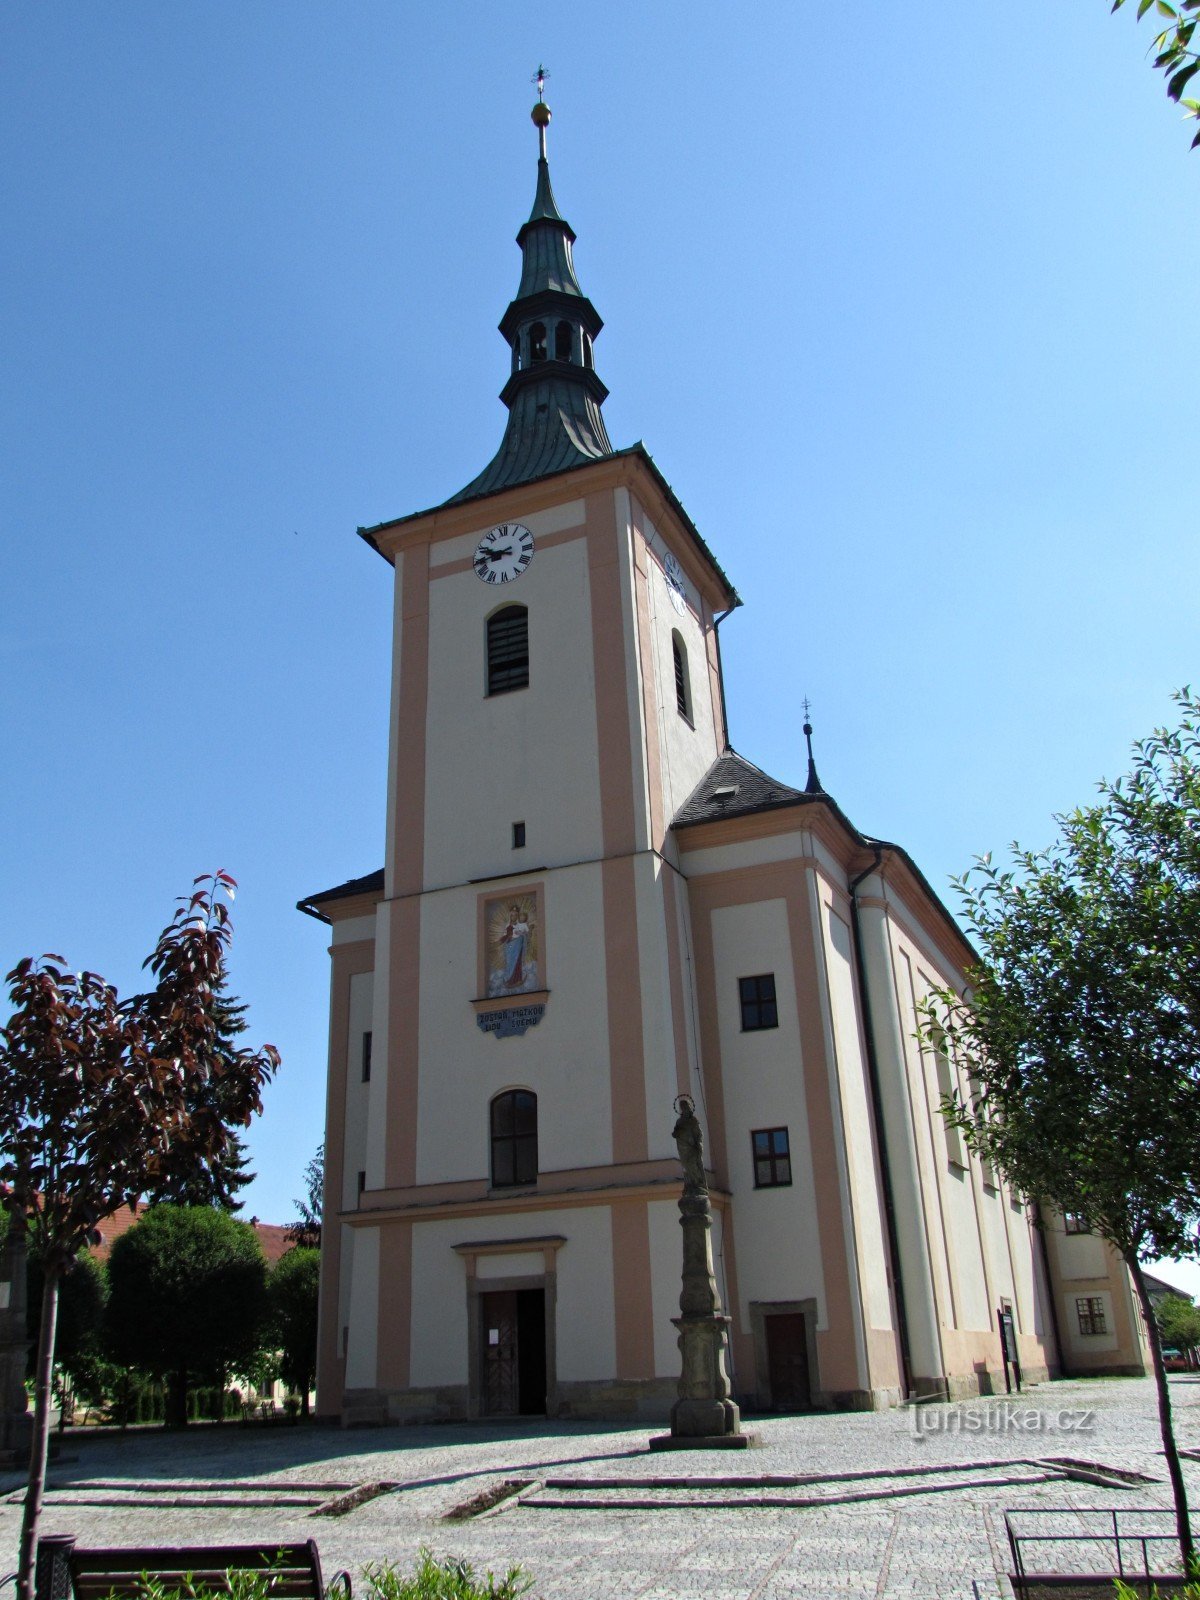 Drahotuše - biserica parohială Sf. Lawrence